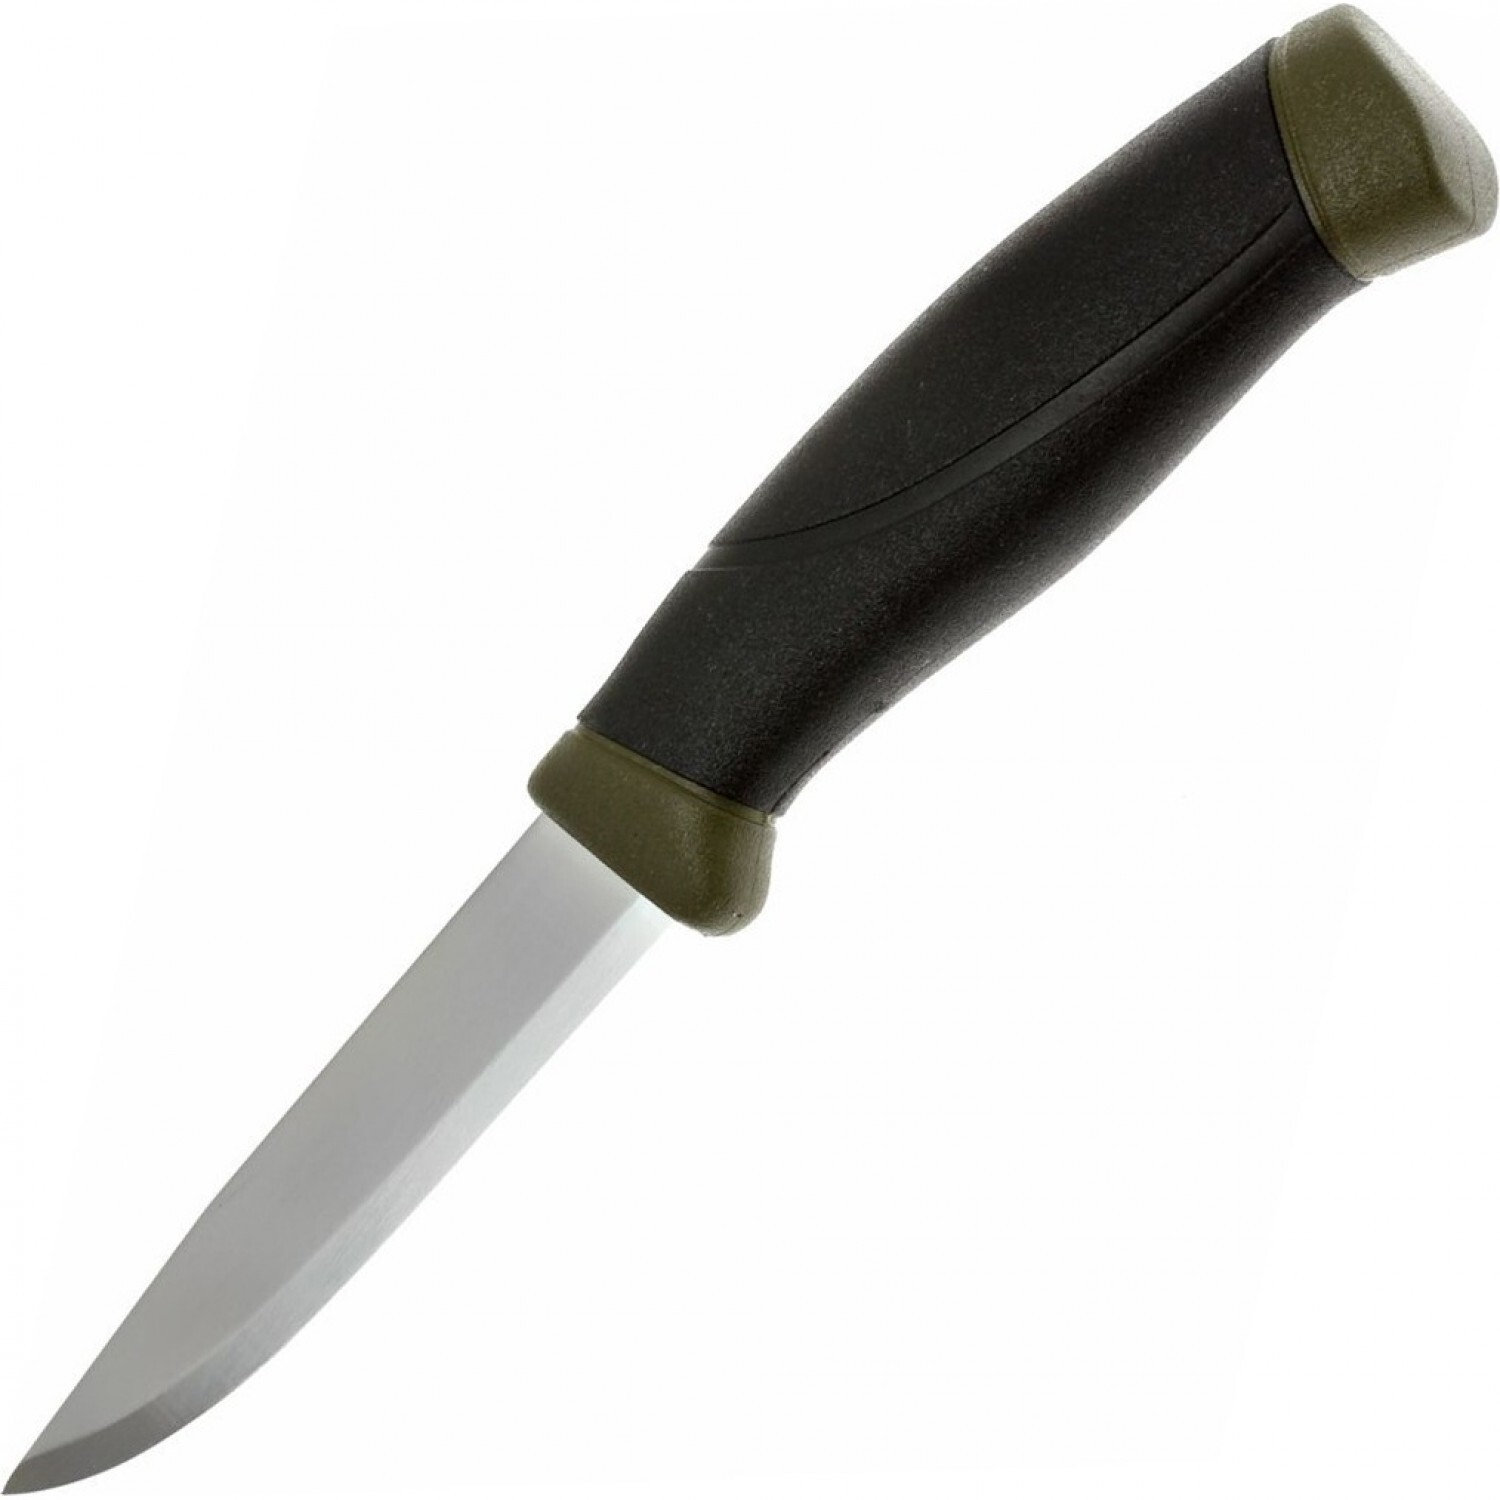 Нож с фиксированным лезвием Morakniv Companion MG (C), углеродистая сталь, рукоять резина/пластик, цвет хаки